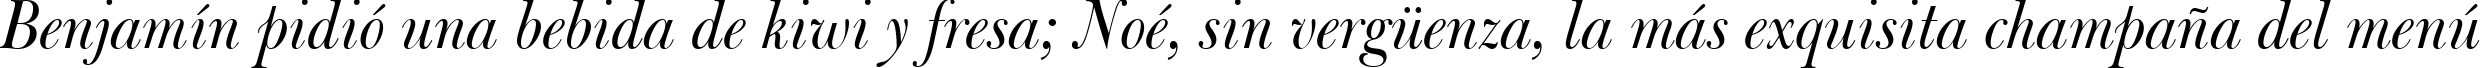 Пример написания шрифтом Bulmer Italic BT текста на испанском